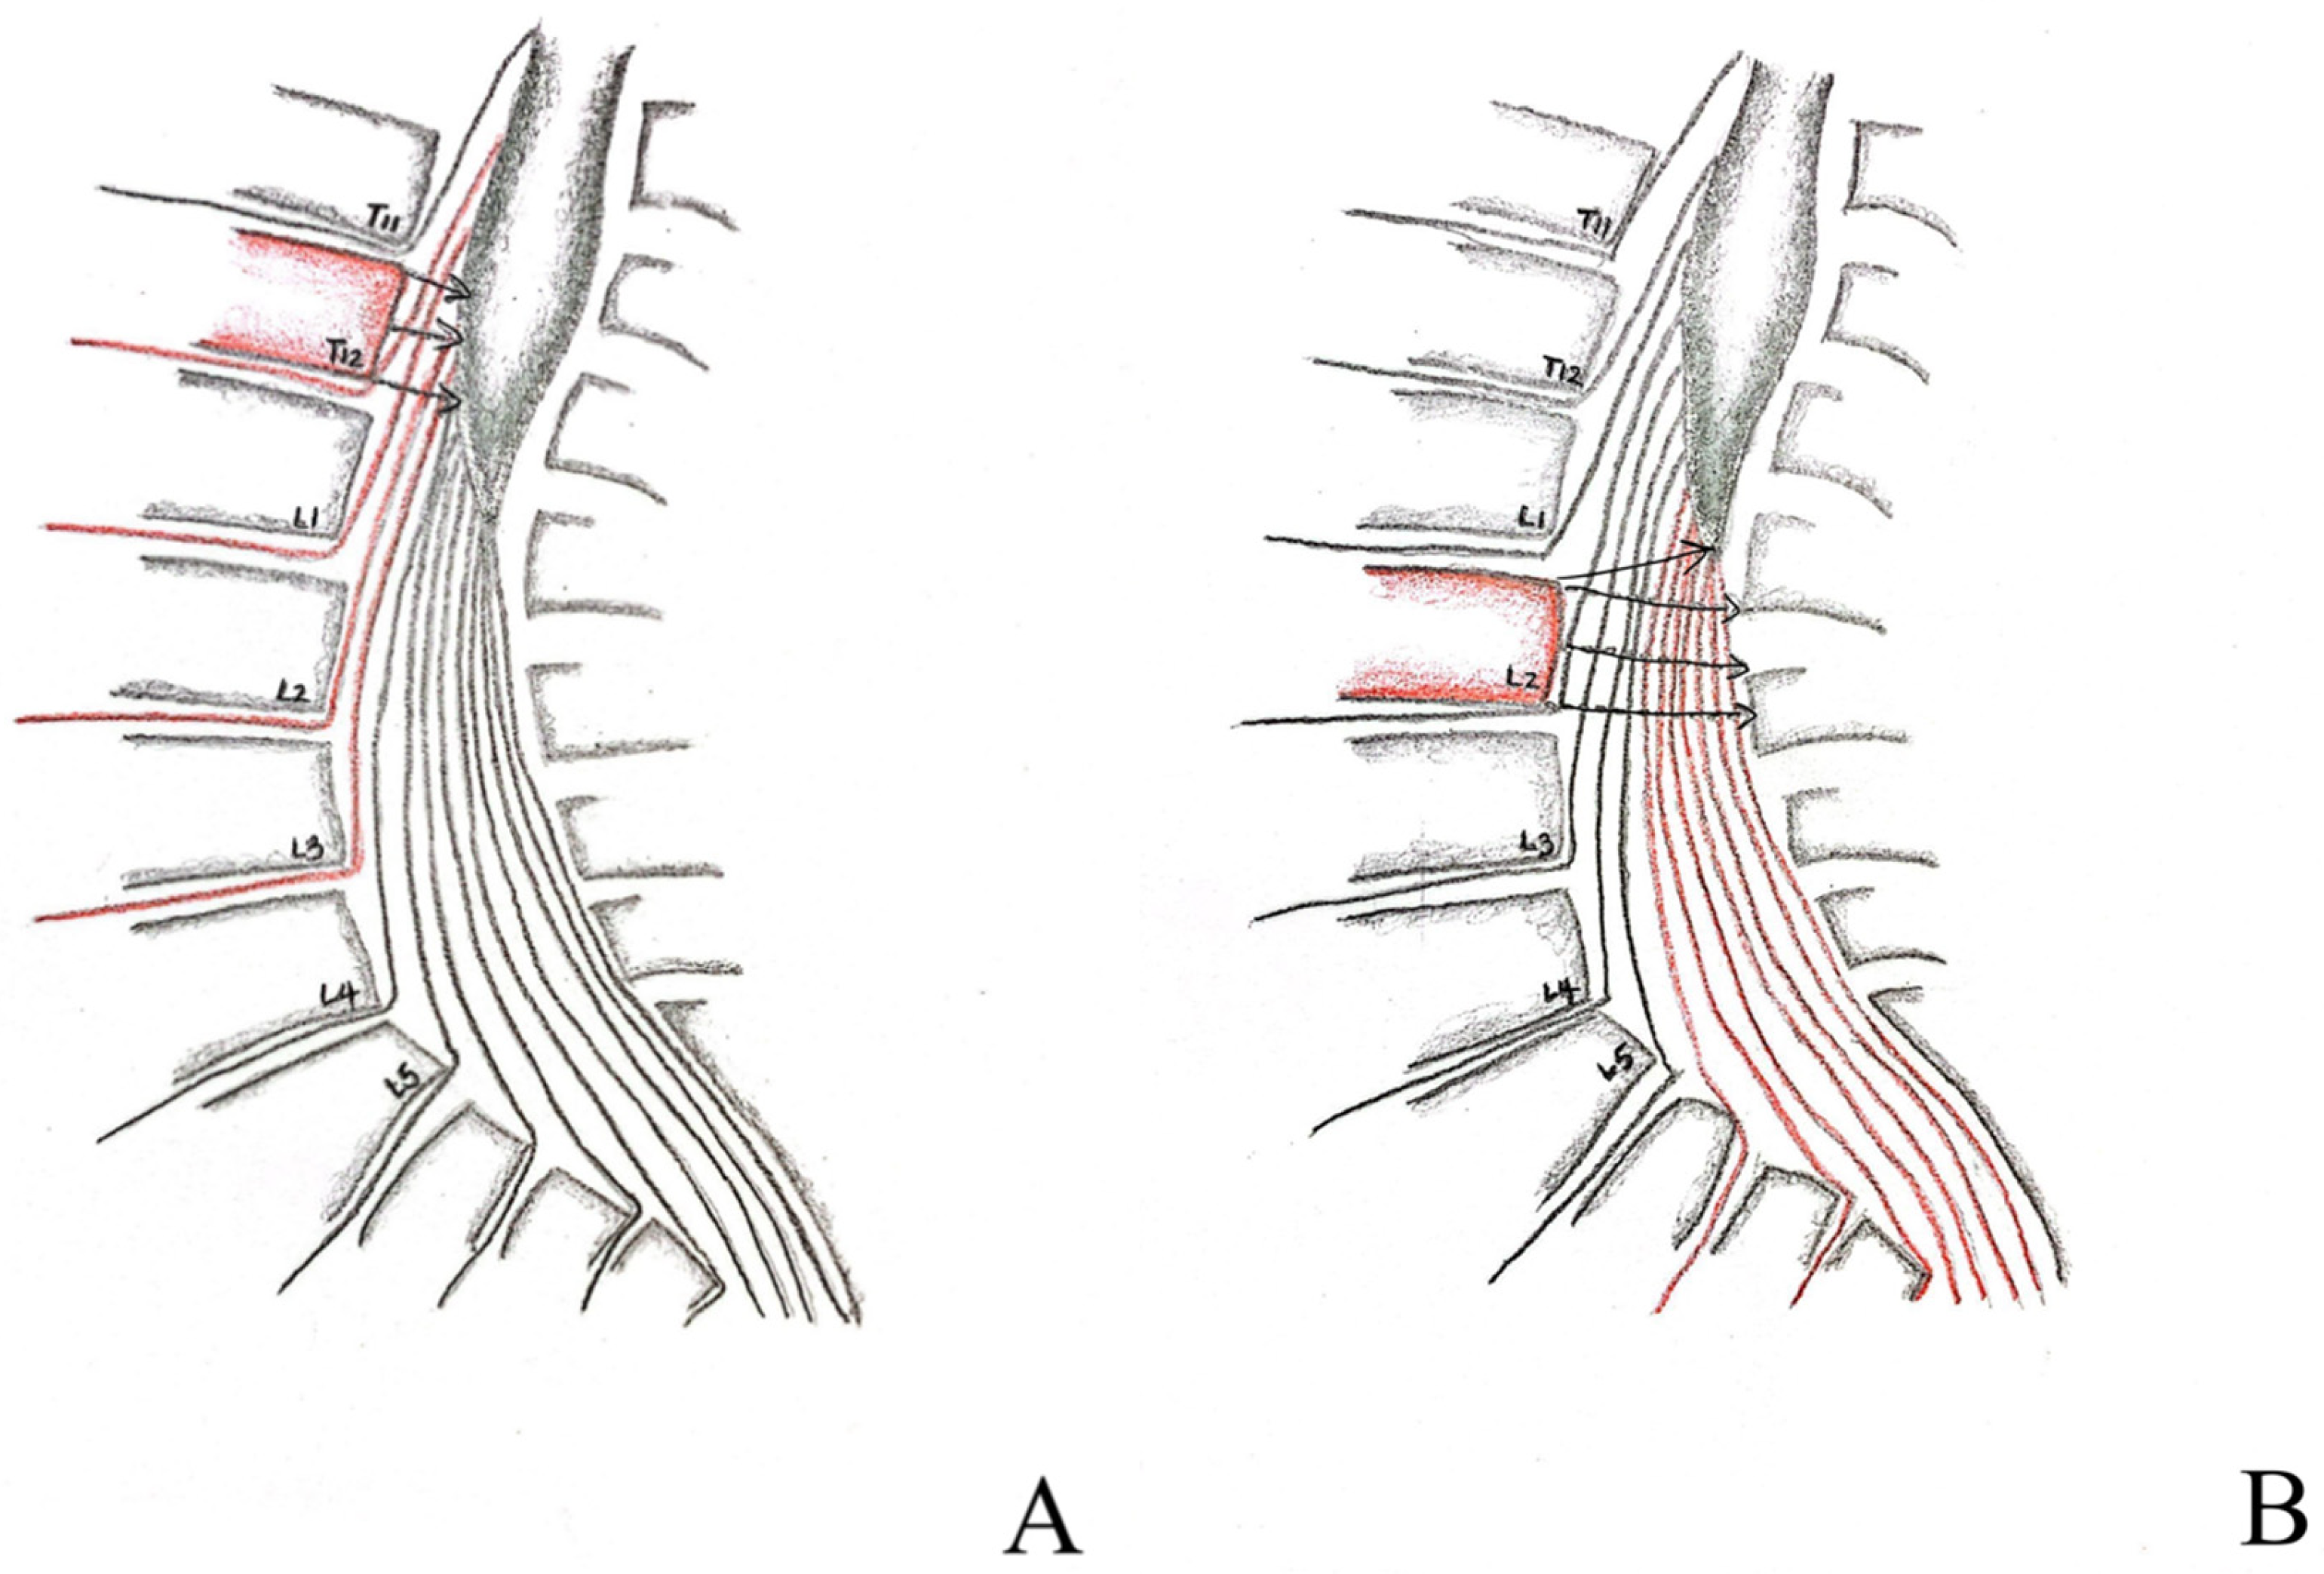 cauda equina vs conus medullaris syndrome